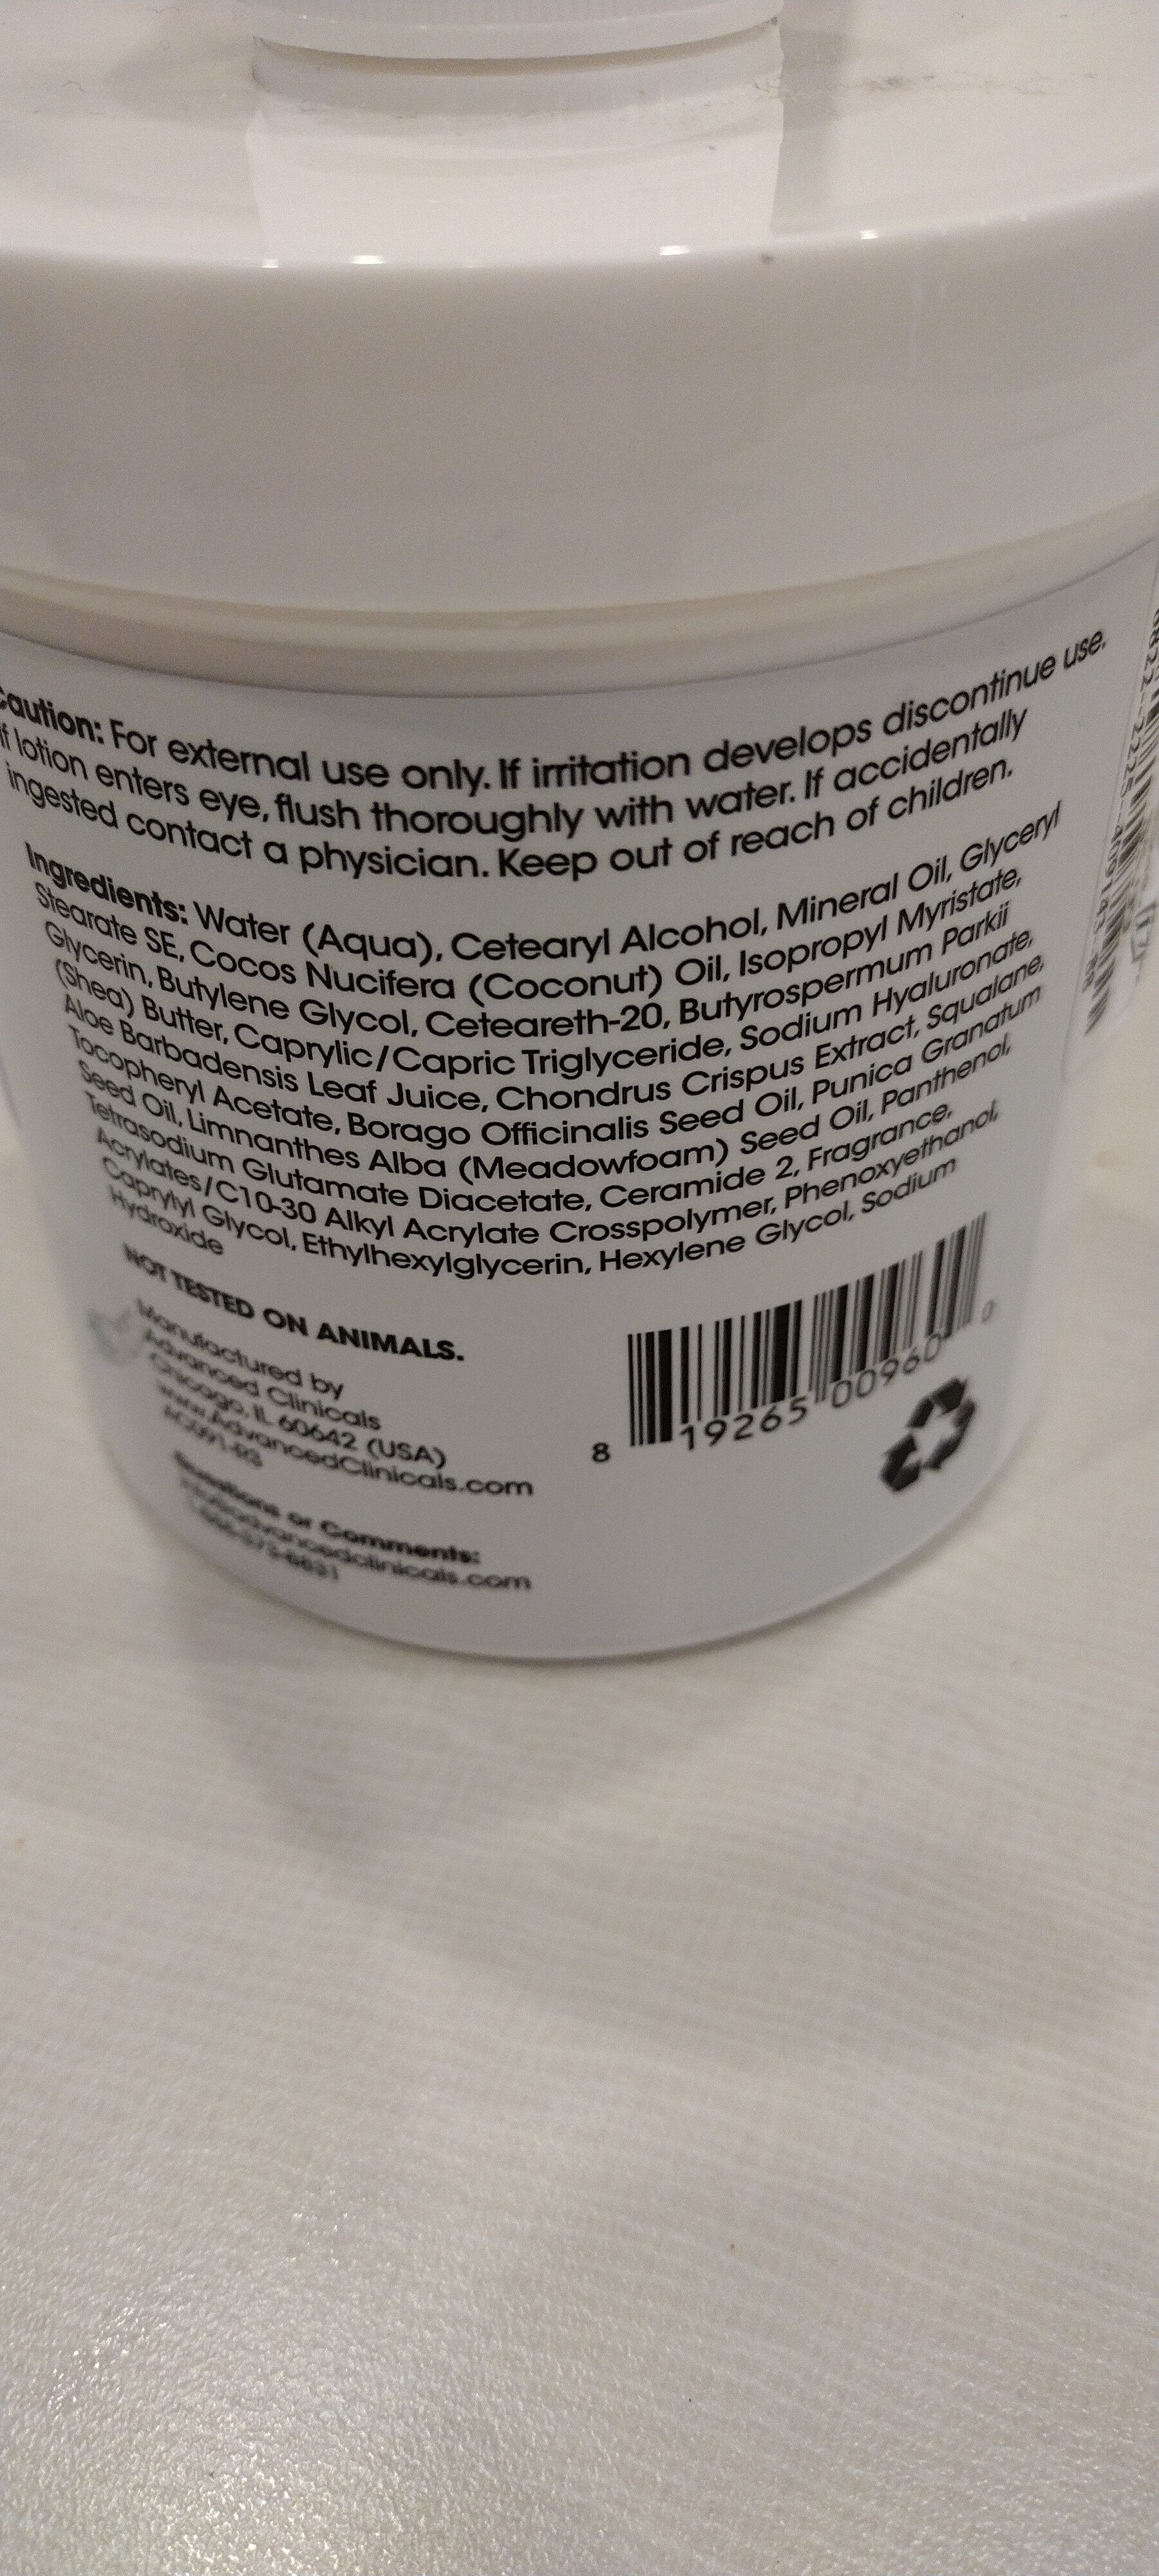 hyaluronic acid - Ingredients - en